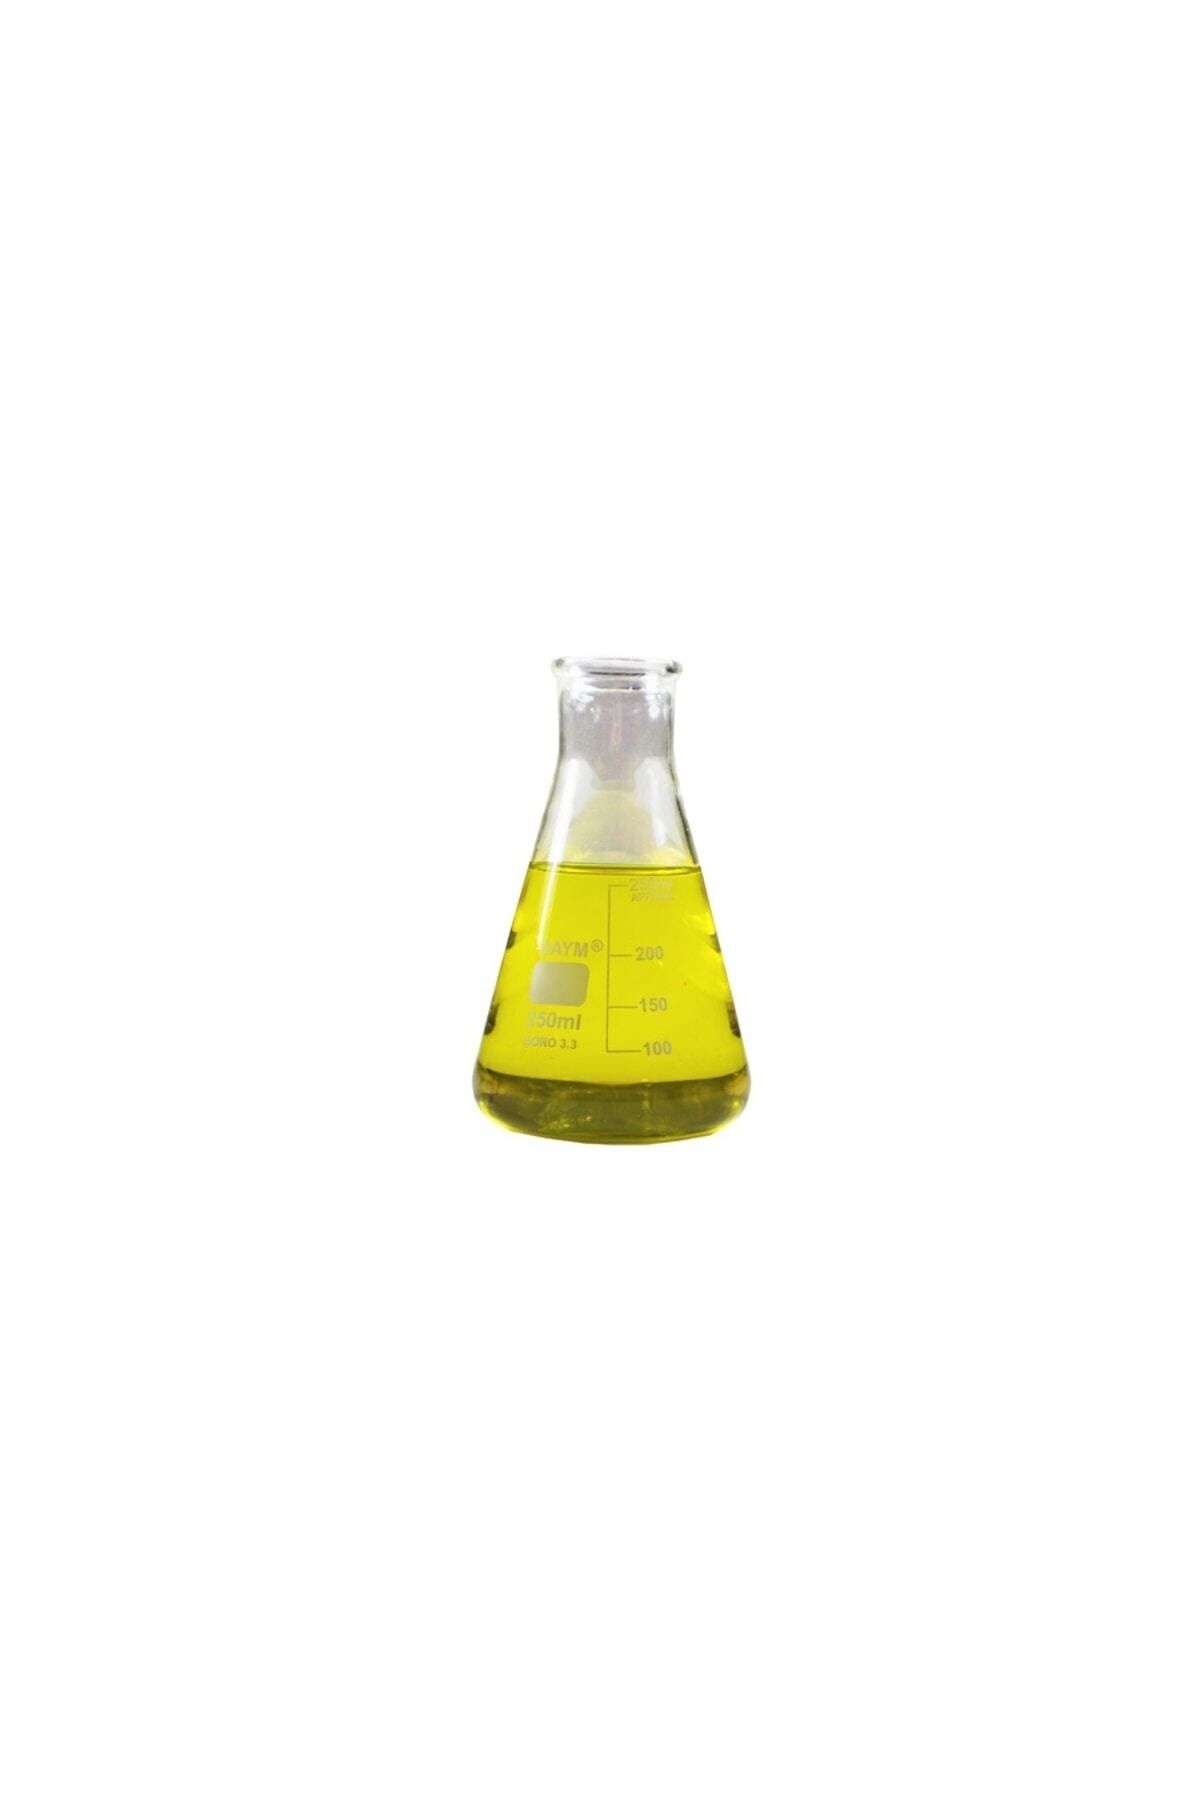 Kimyacınız Erlen Cam 250 ml - 1 Adet